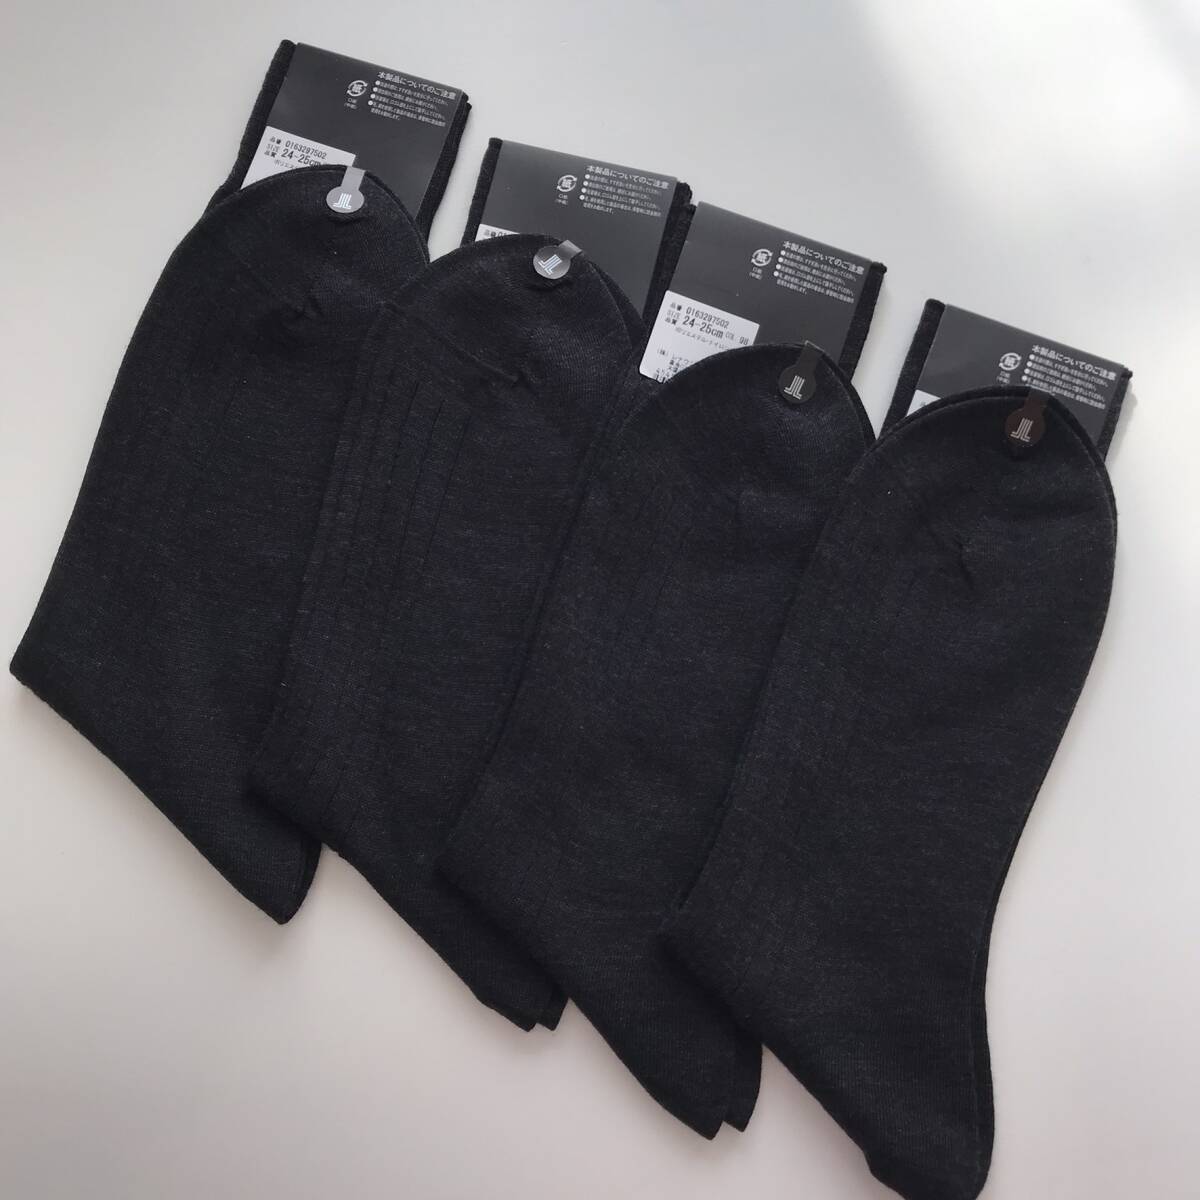 新品【24-25㎝】◆ランバン コレクション 靴下 4足セット メンズ 日本製 ビジネスソックス メンズ 男性 レナウン ランバン 靴下 ⑰の画像3